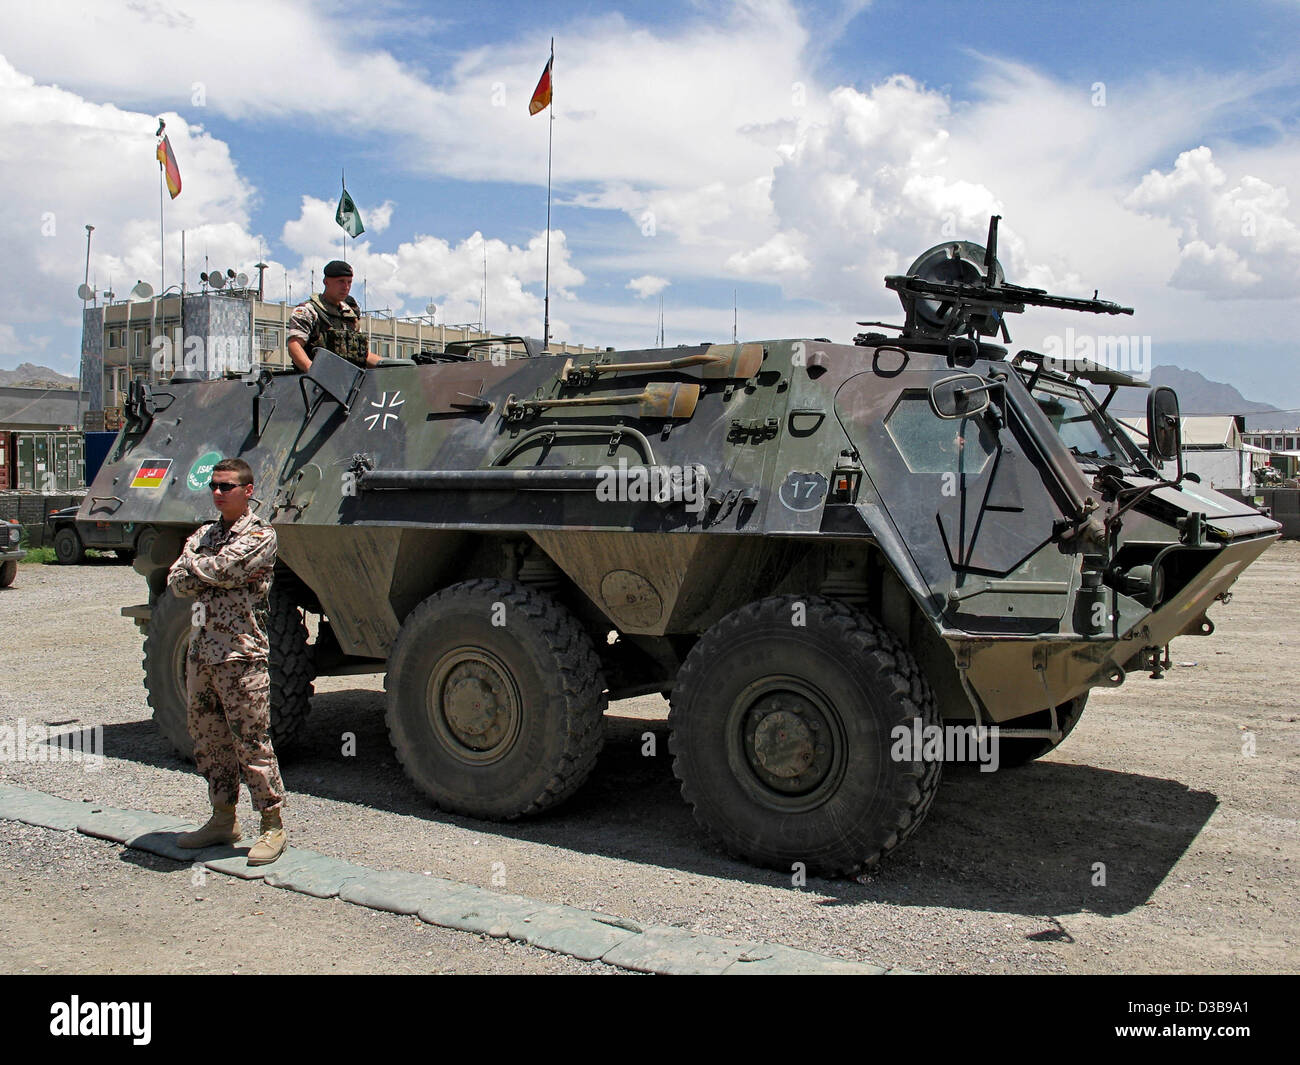 (Dpa file) - l'immagine, datata 15 giugno 2004, mostra un "Fuchs' serbatoio della Bundeswehr tedesca il tedesco bivouak "Camp" di magazzino a Kabul, Afghanistan. Nell'ambito della Forza internazionale di assistenza alla sicurezza (ISAF), le forze armate tedesche è stata basata in Afghanistan dal gennaio 2002. Foto Stock